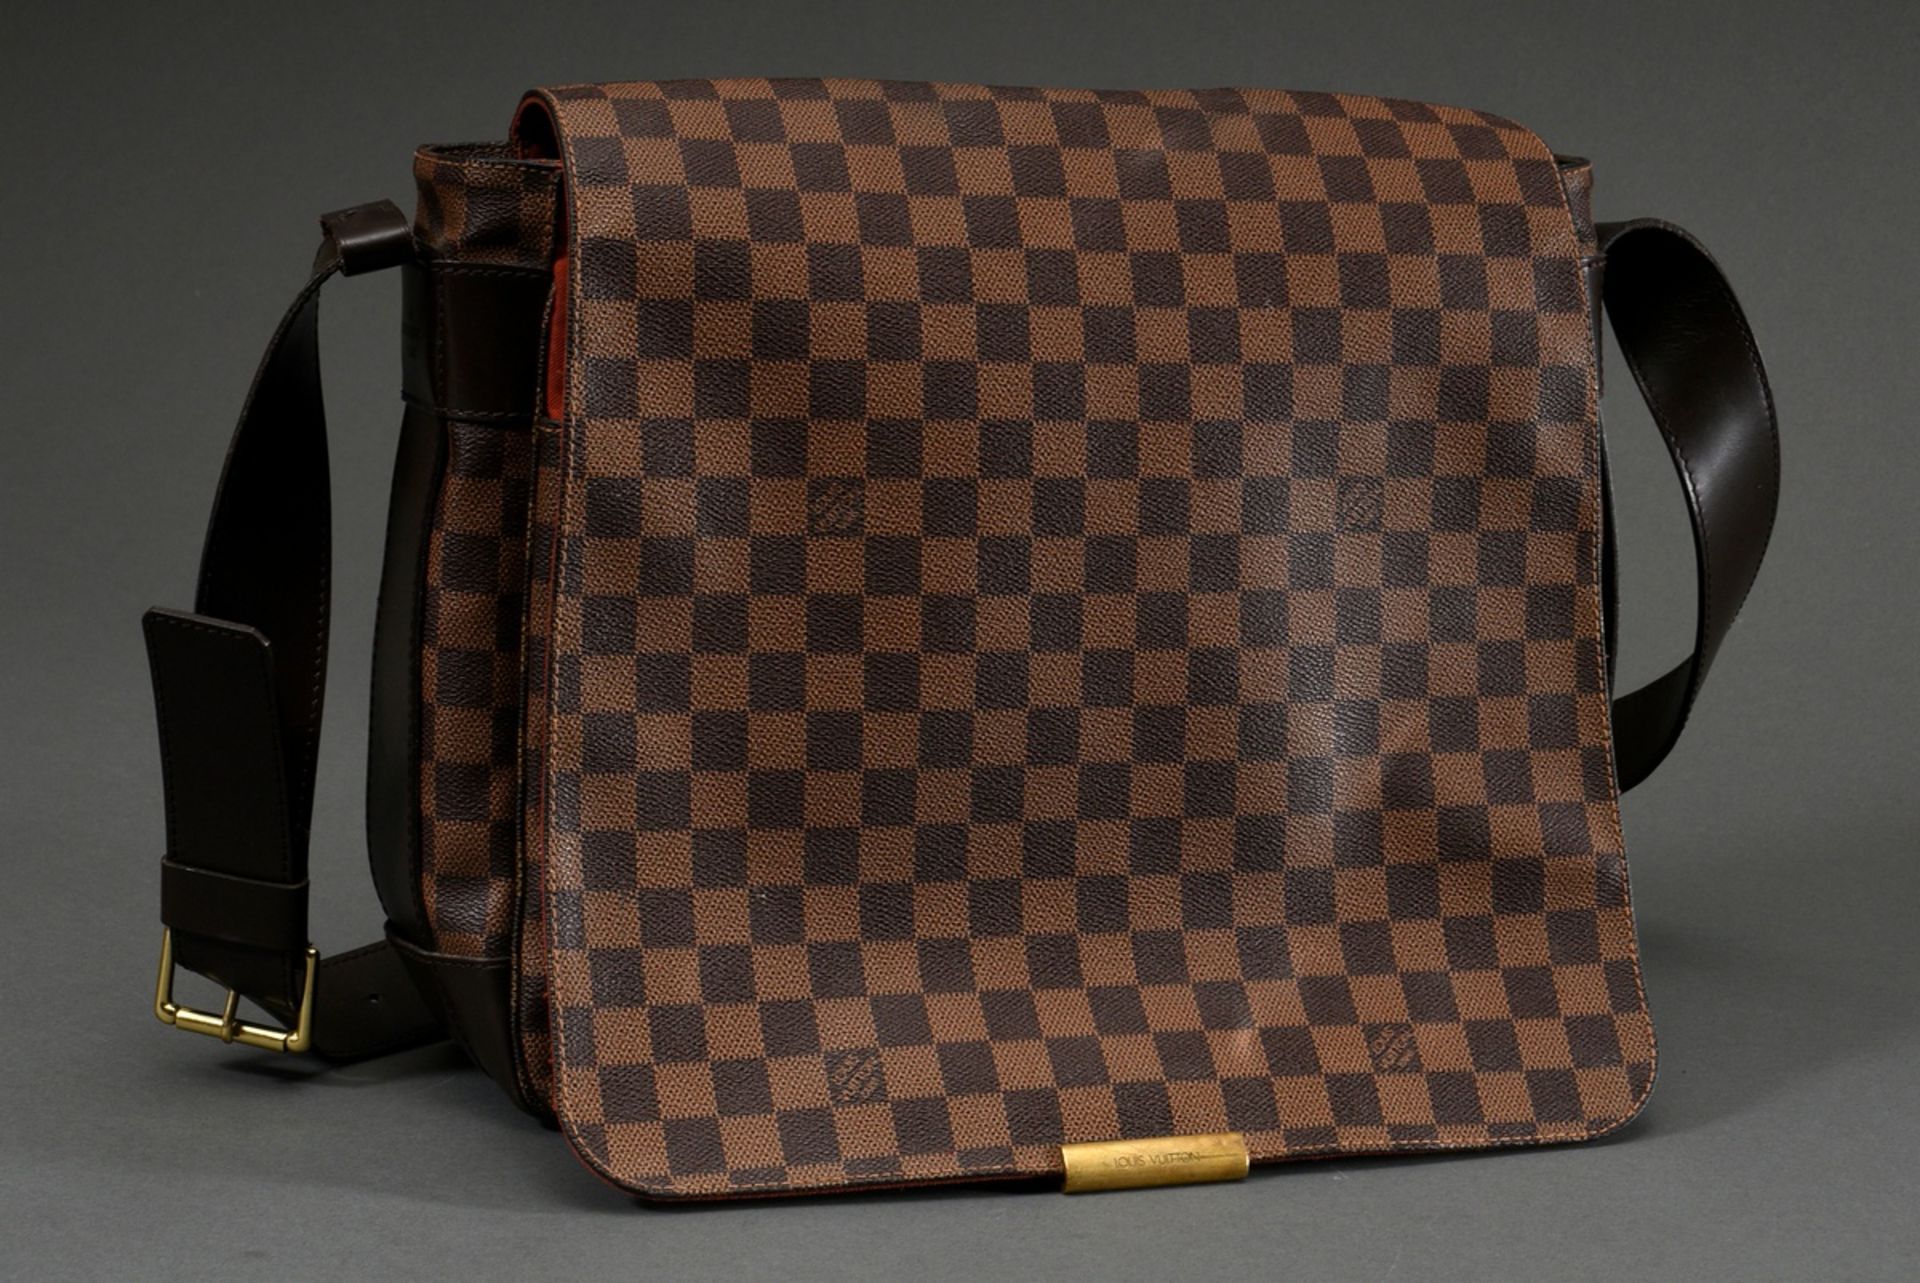 Louis Vuitton vintage "Bastille" messenger bag in damier level canvas with dark brown adjustable le